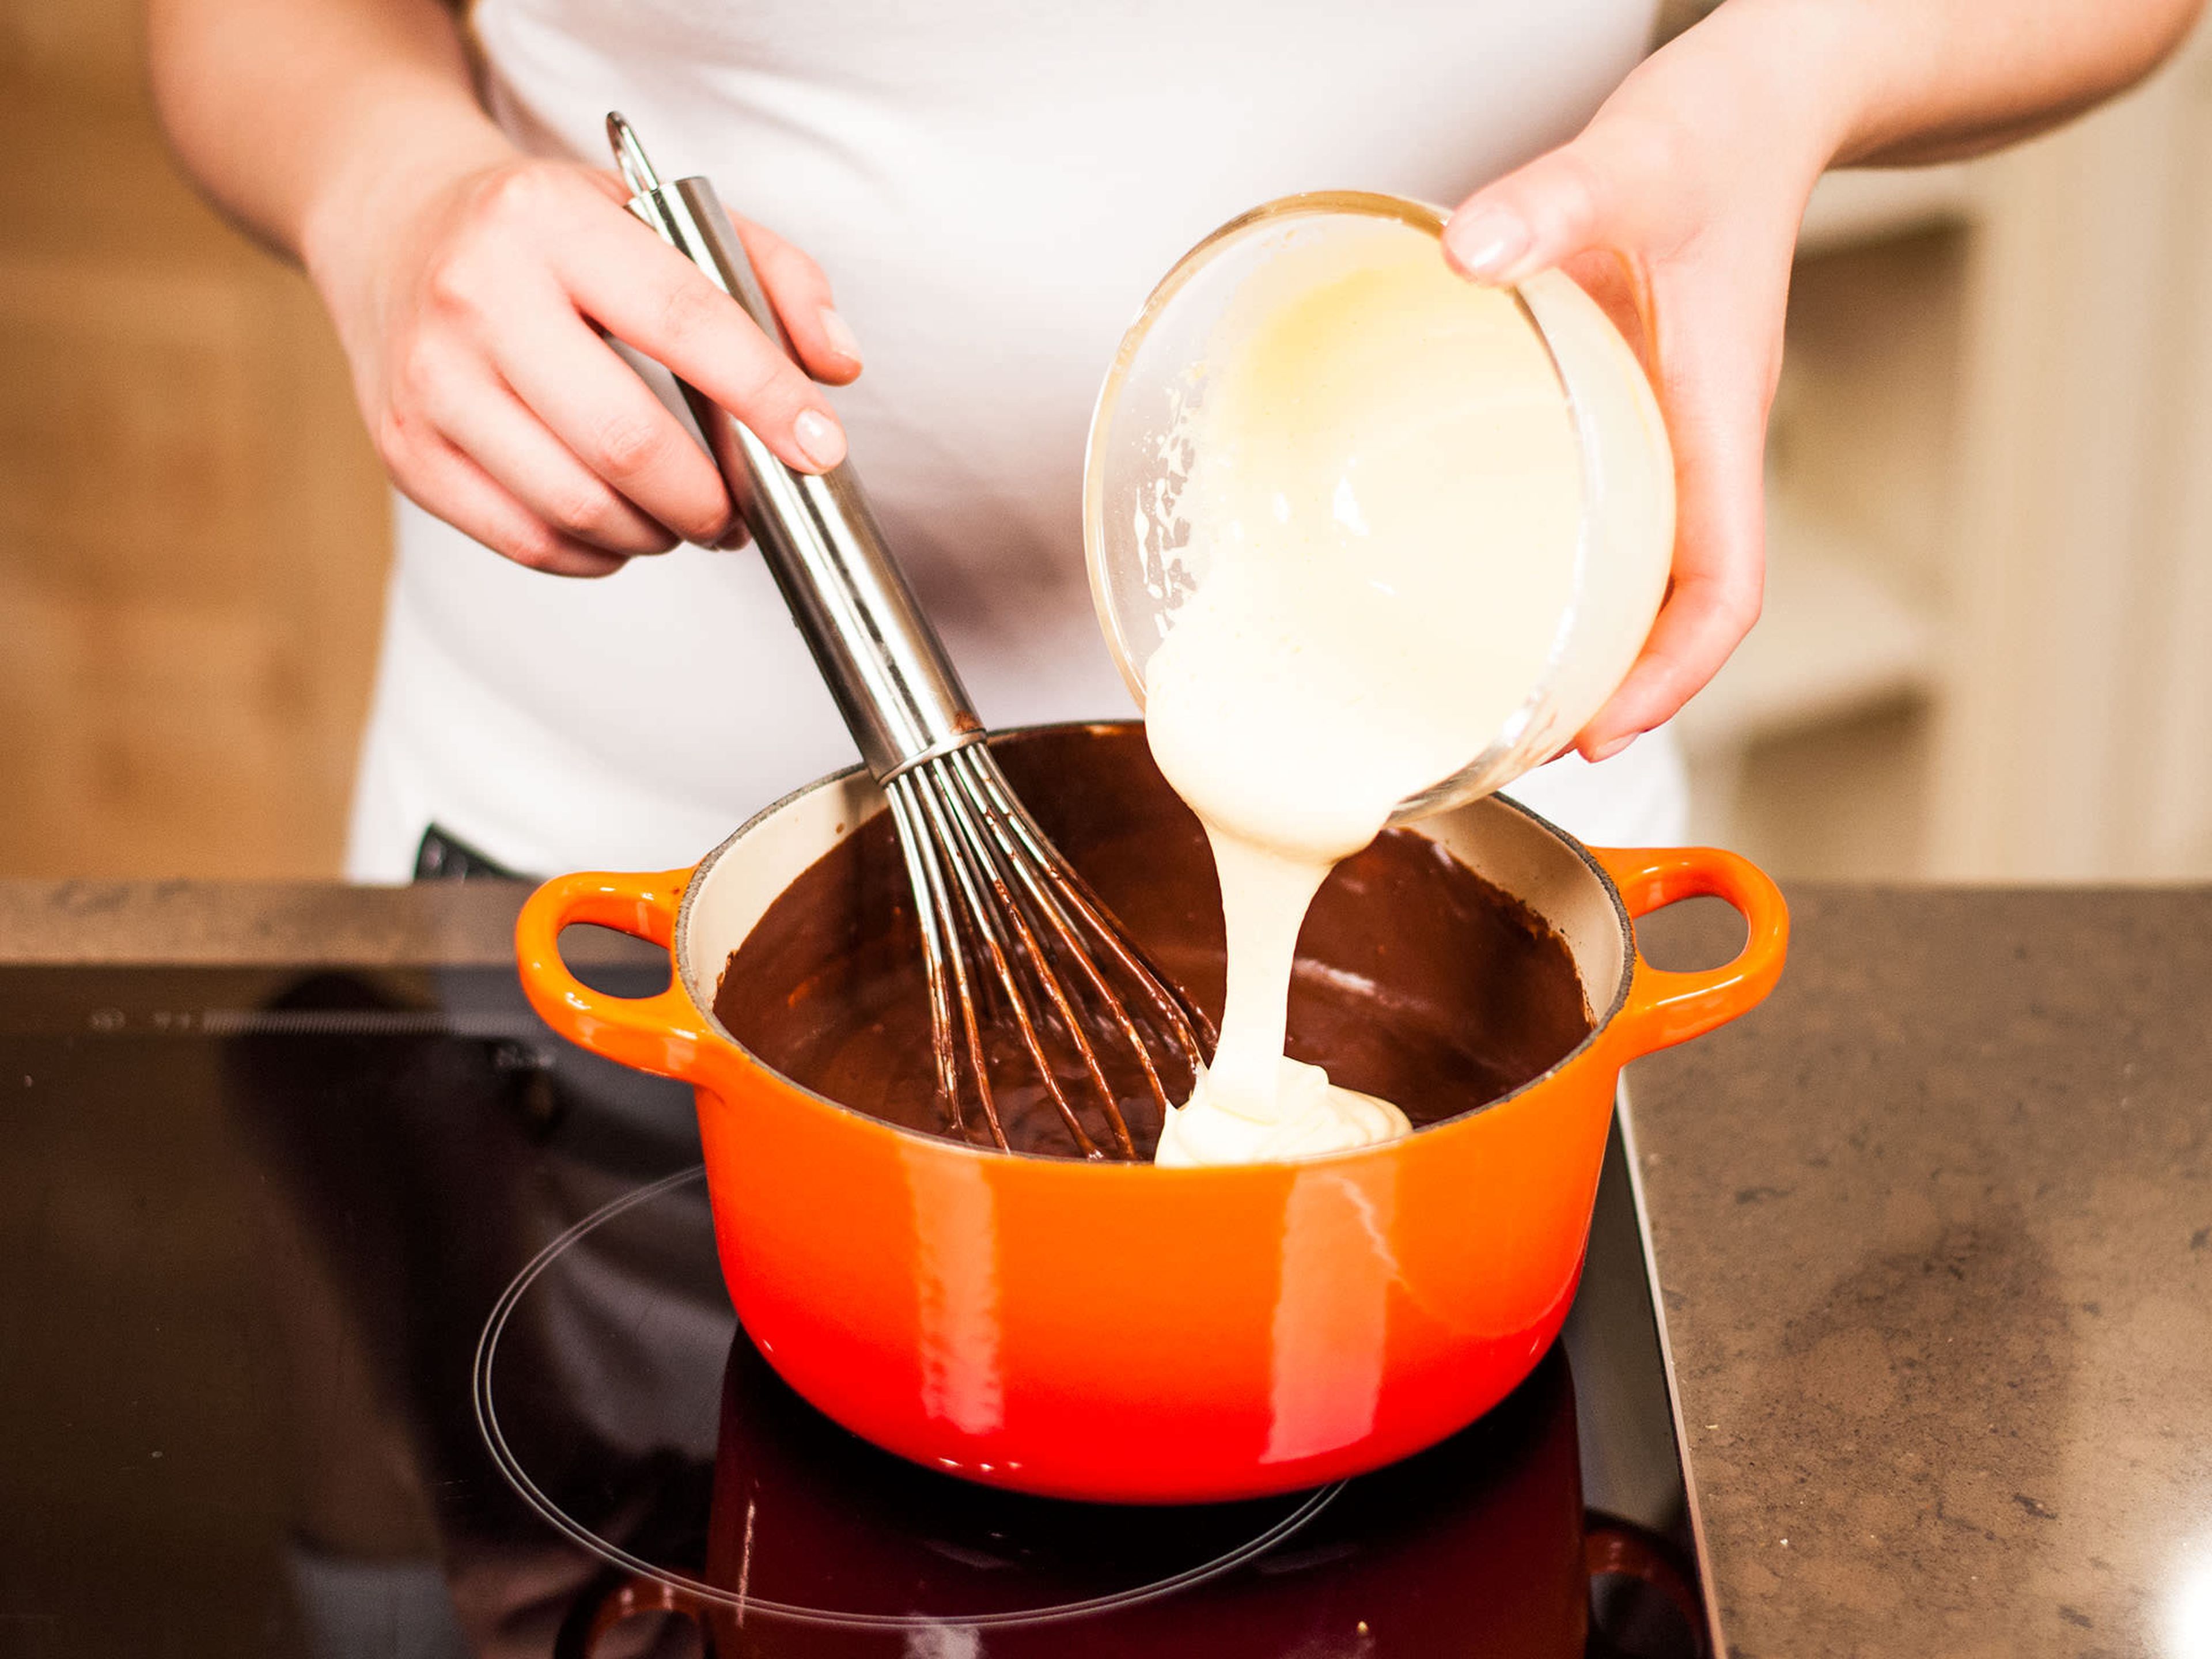 Zucker und Eigelbe mit einem Handrührgerät schaumig schlagen und sofort unter den Pudding heben. Anschließend auf die Servierschalen verteilen und lauwarm oder kalt servieren.